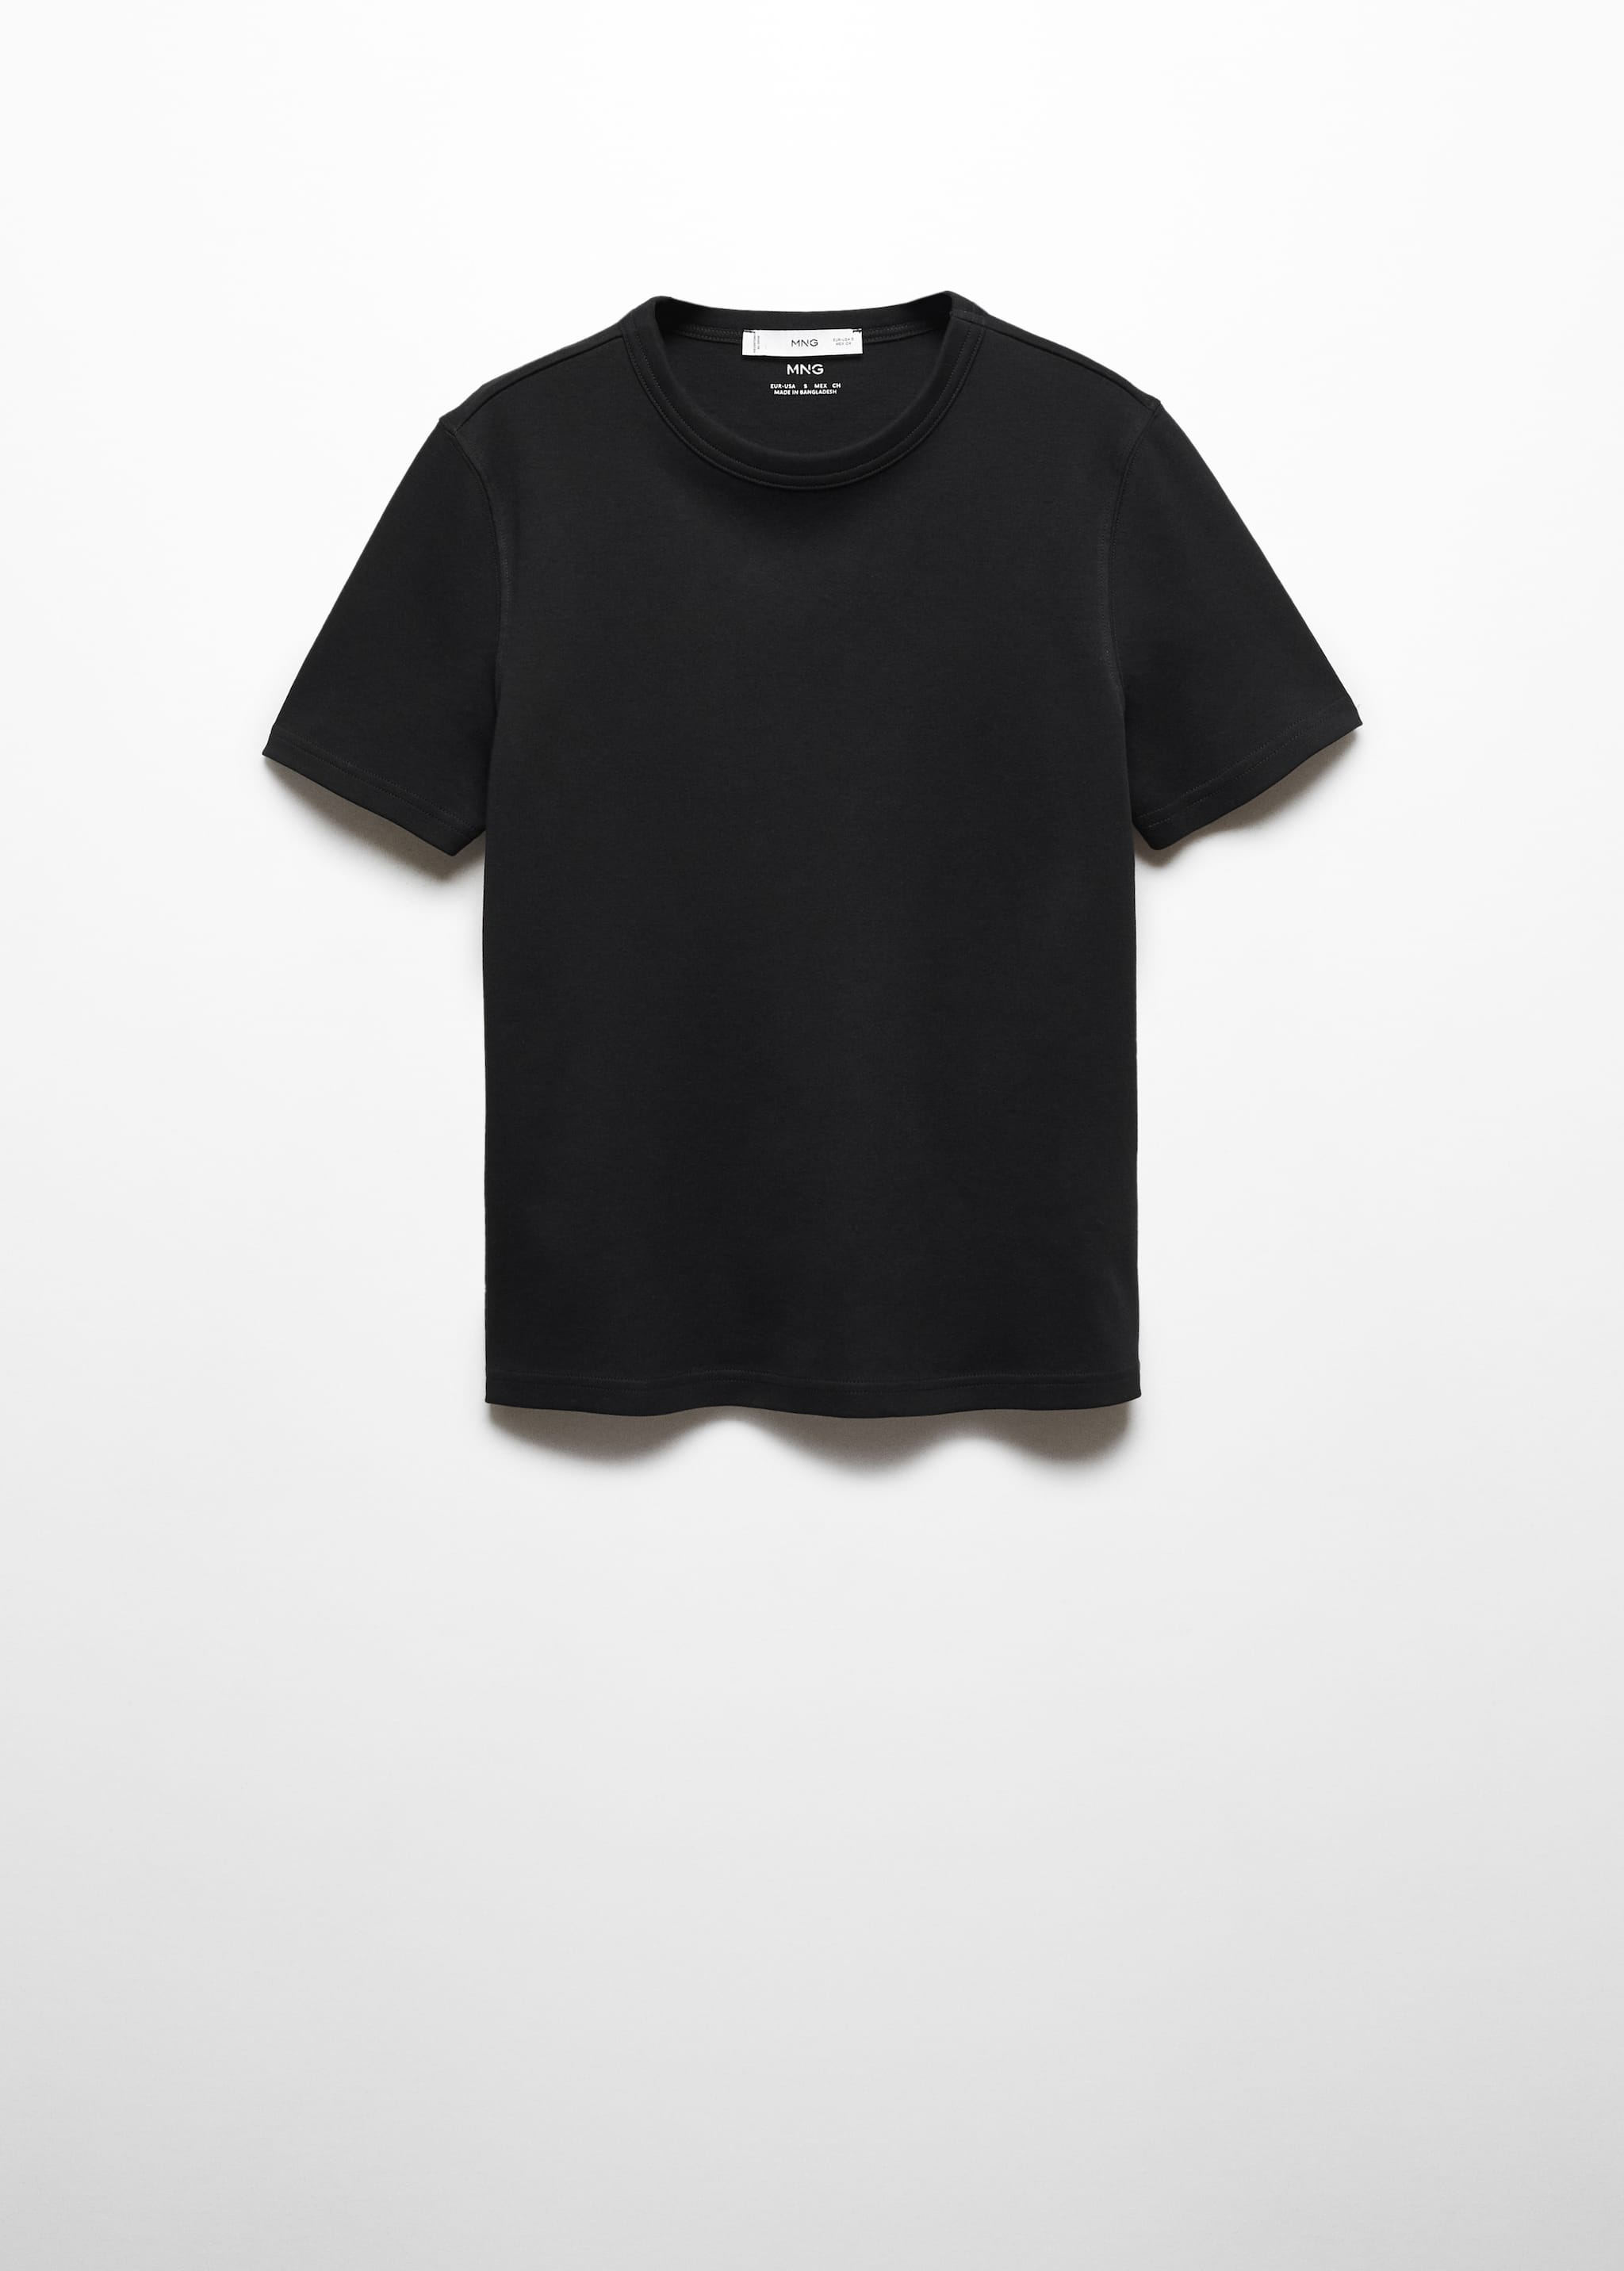 Camiseta premium algodón - Artículo sin modelo